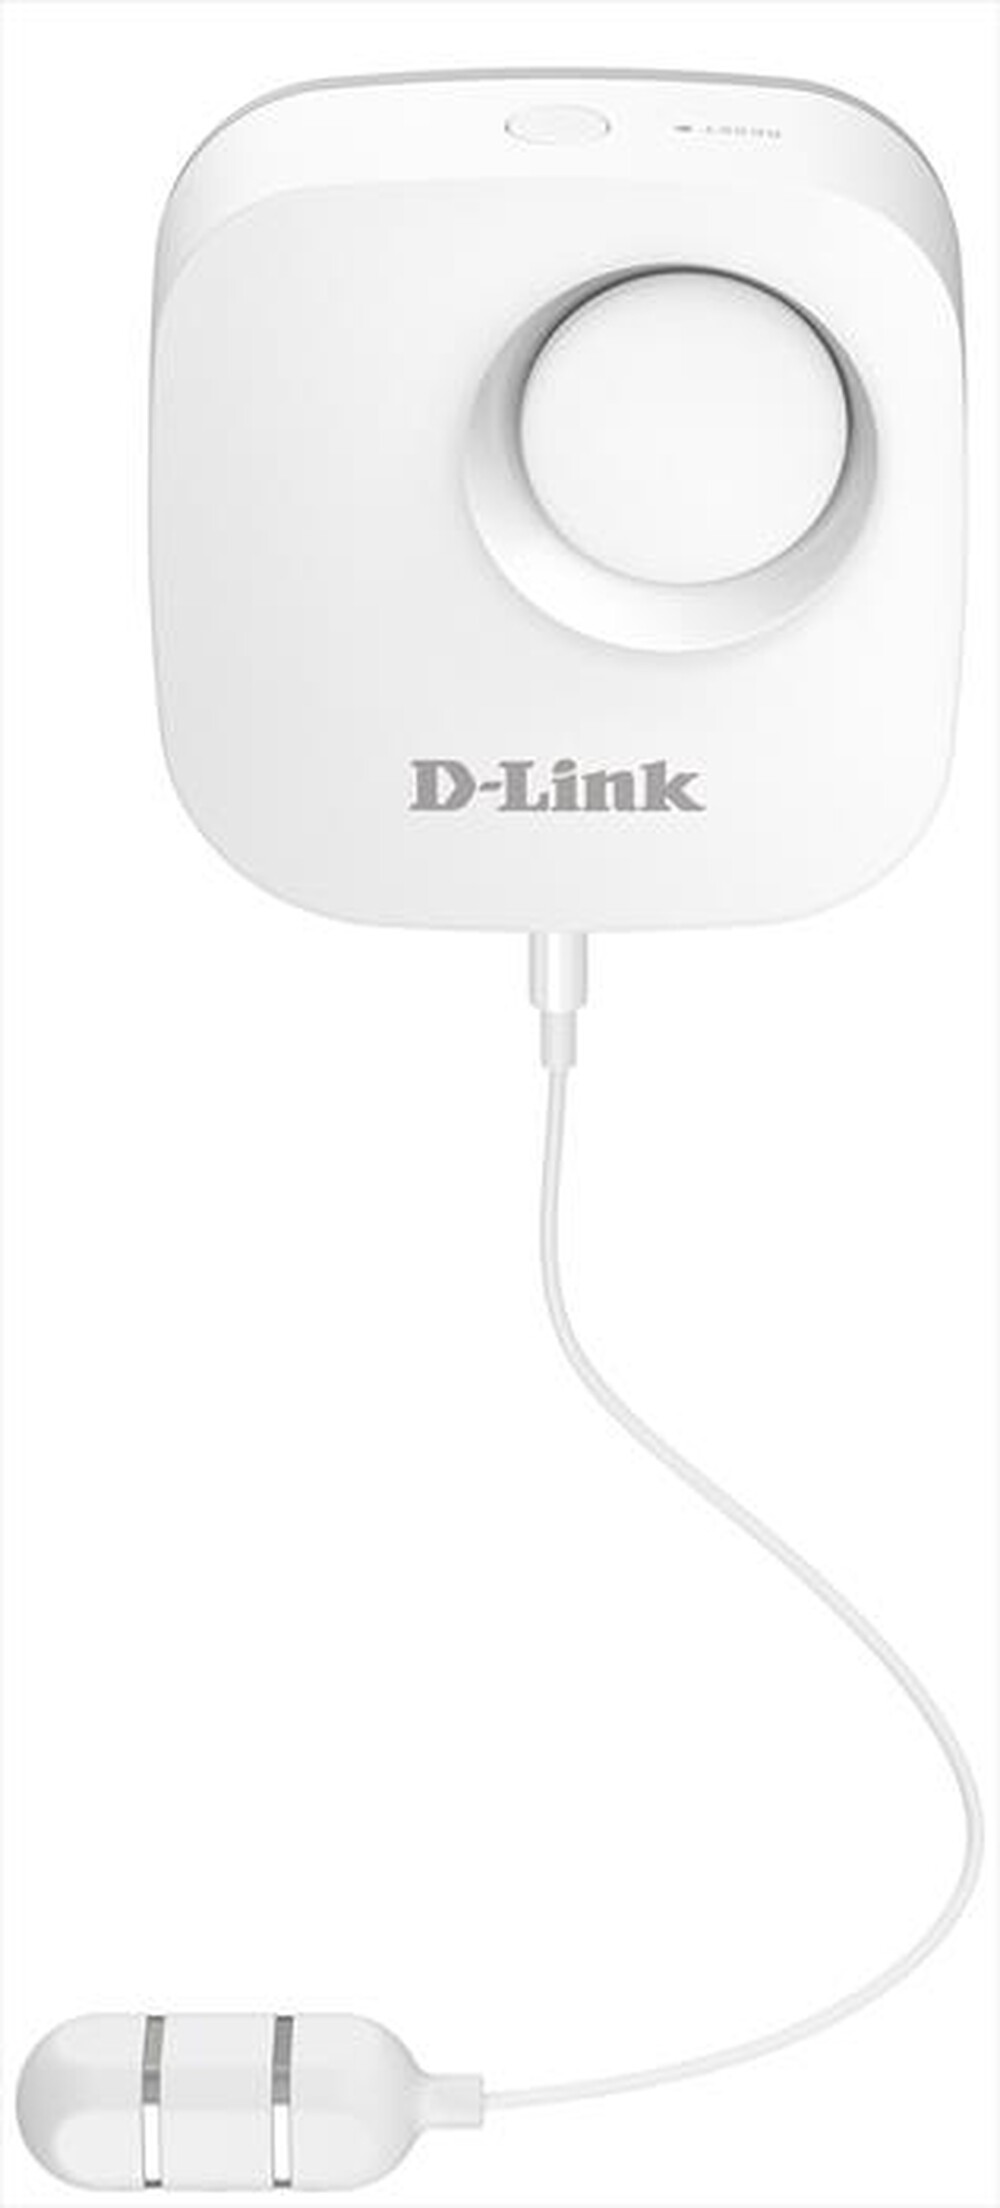 "D-LINK - DCH-S161 - Bianco"